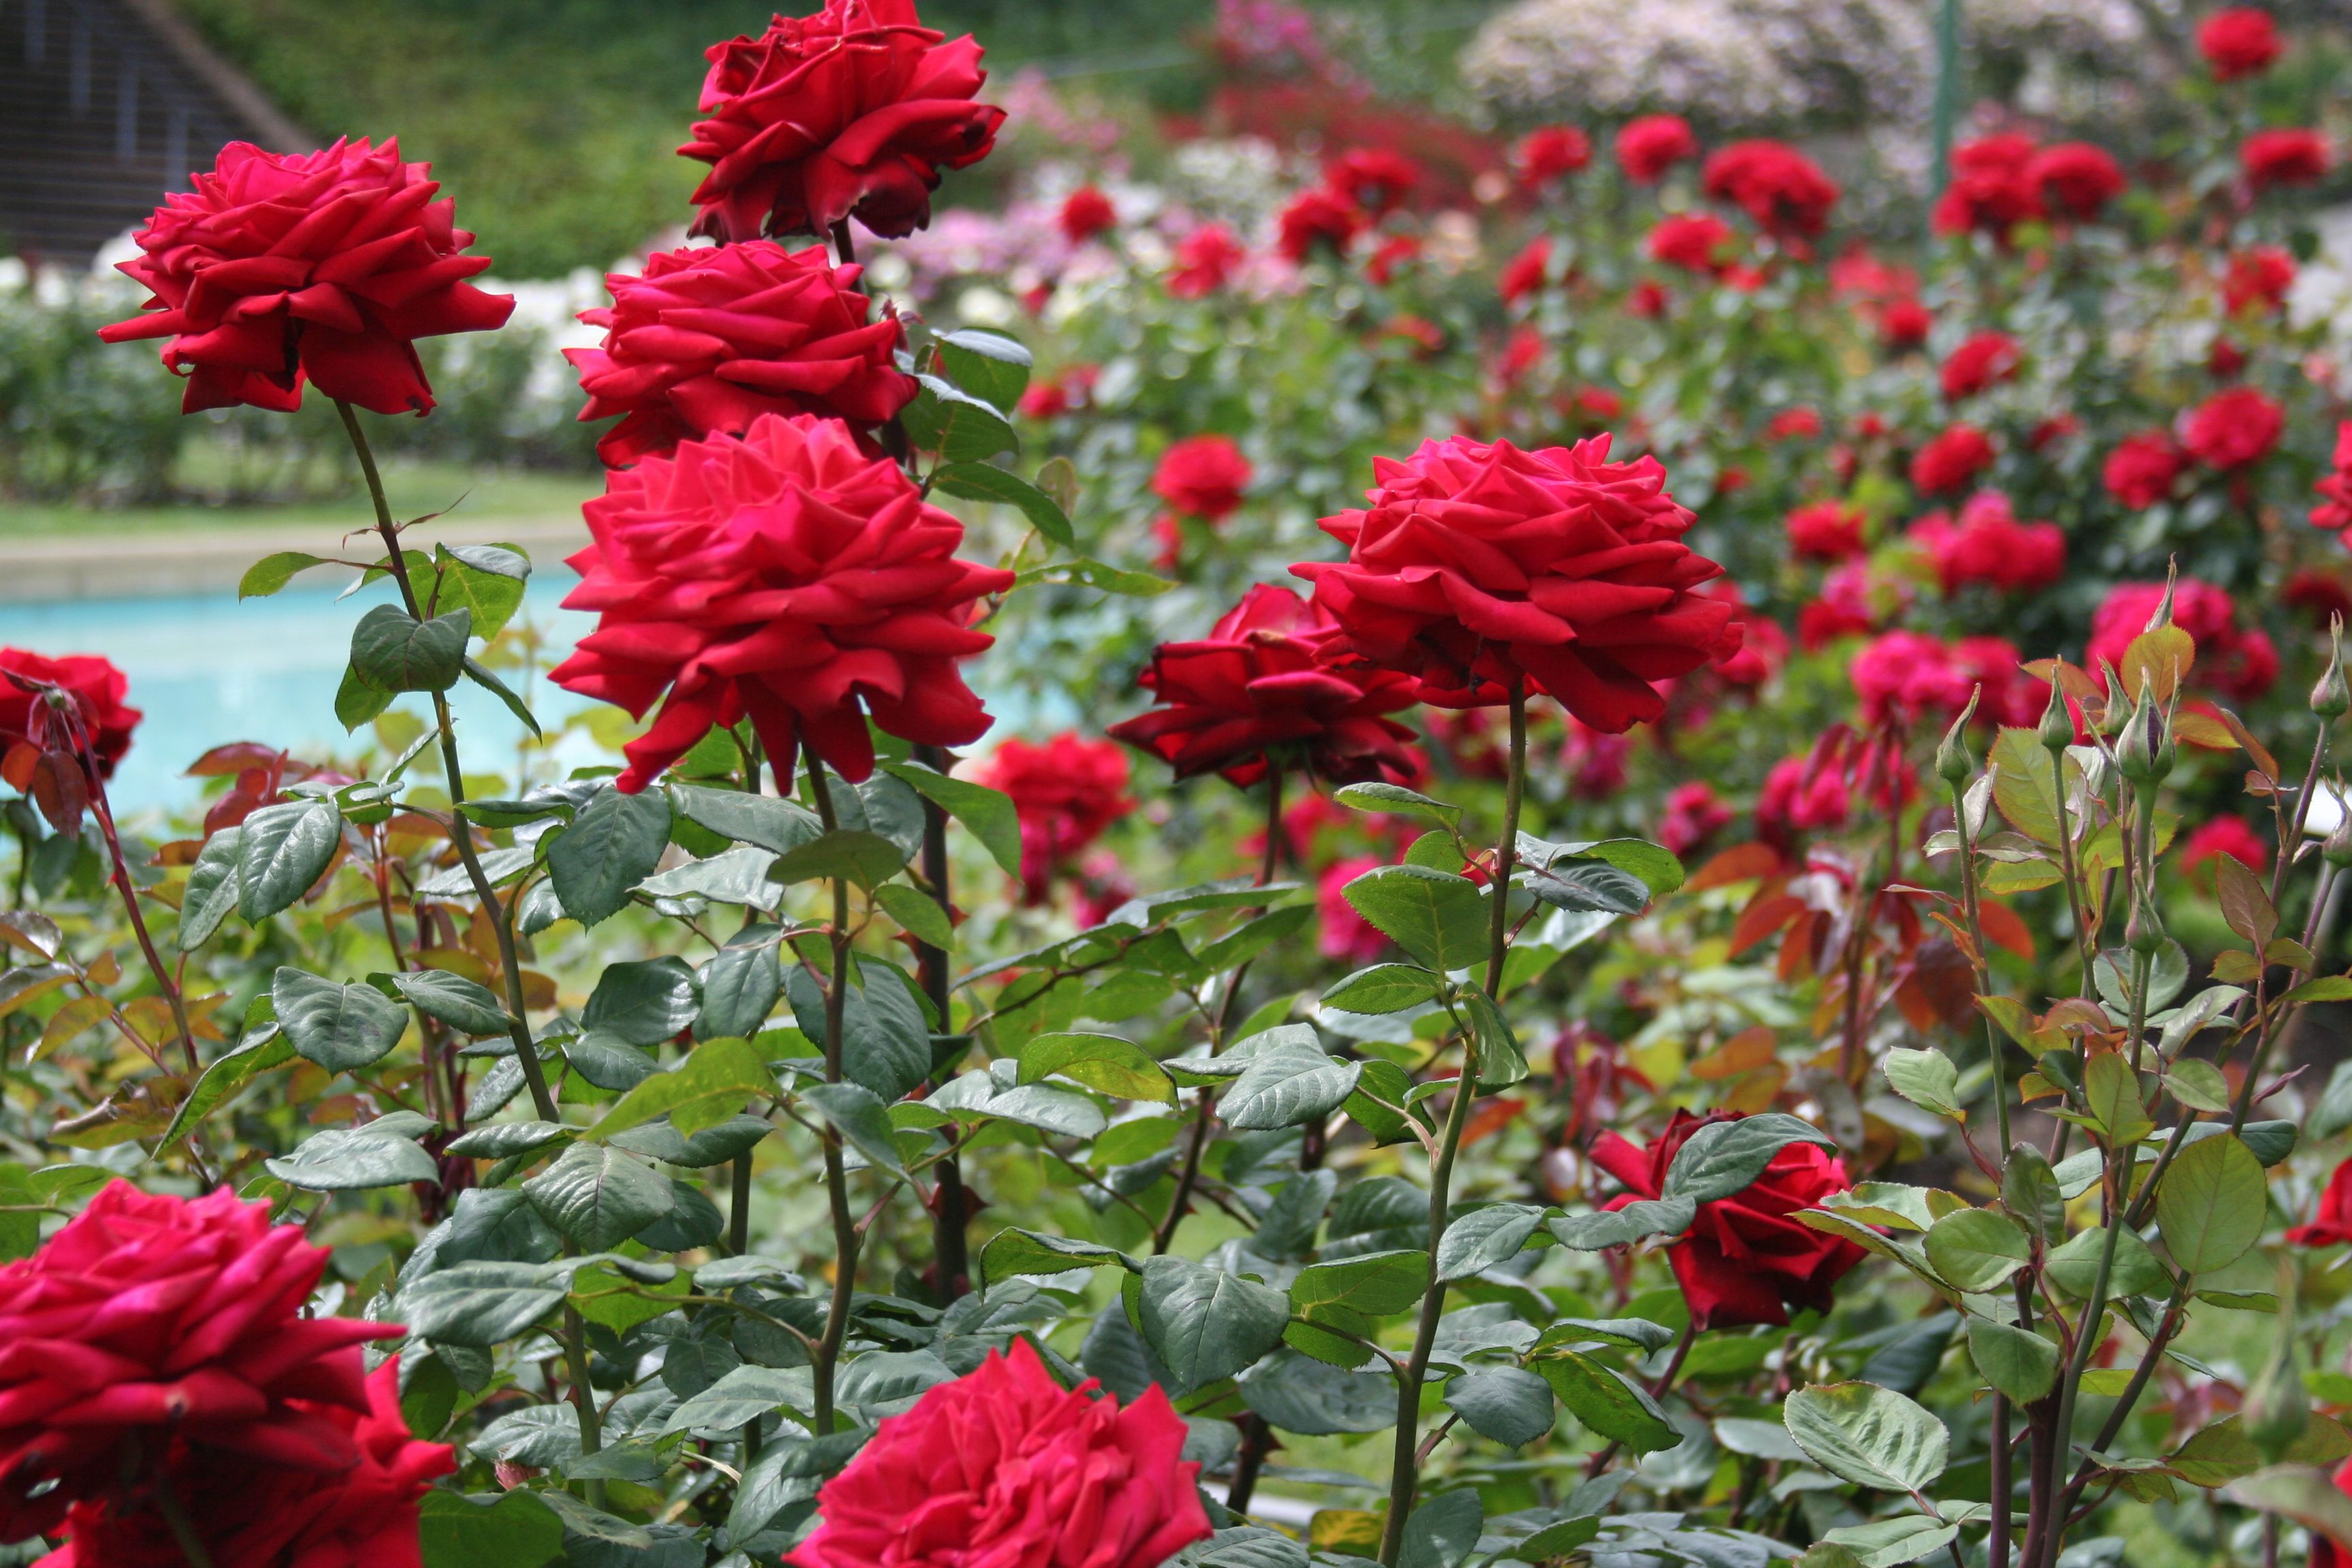 http://aolop.us/red-rose-garden-wallpaper/